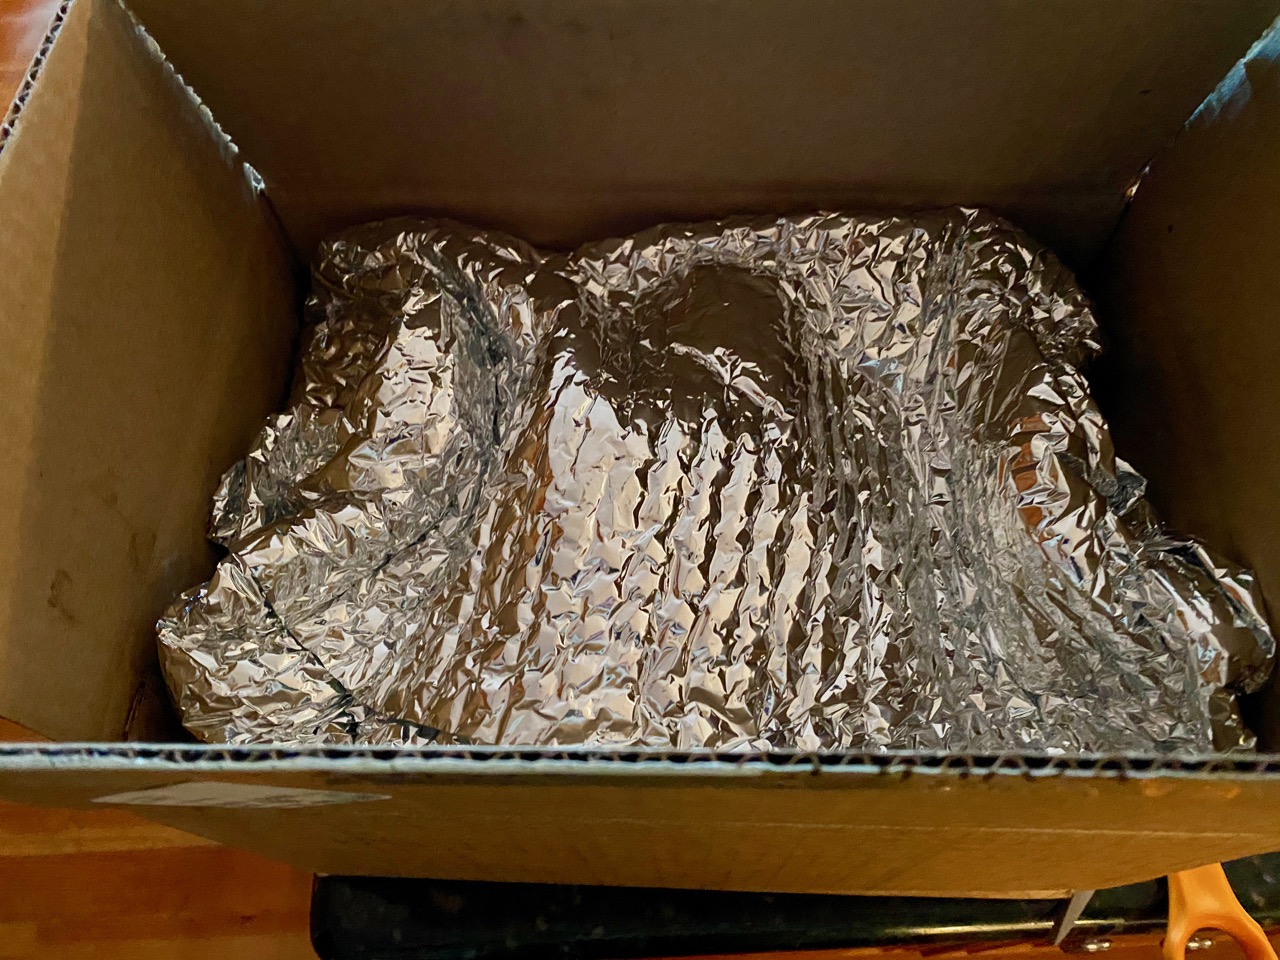 Best Chocolate Truffles Gift exterior box